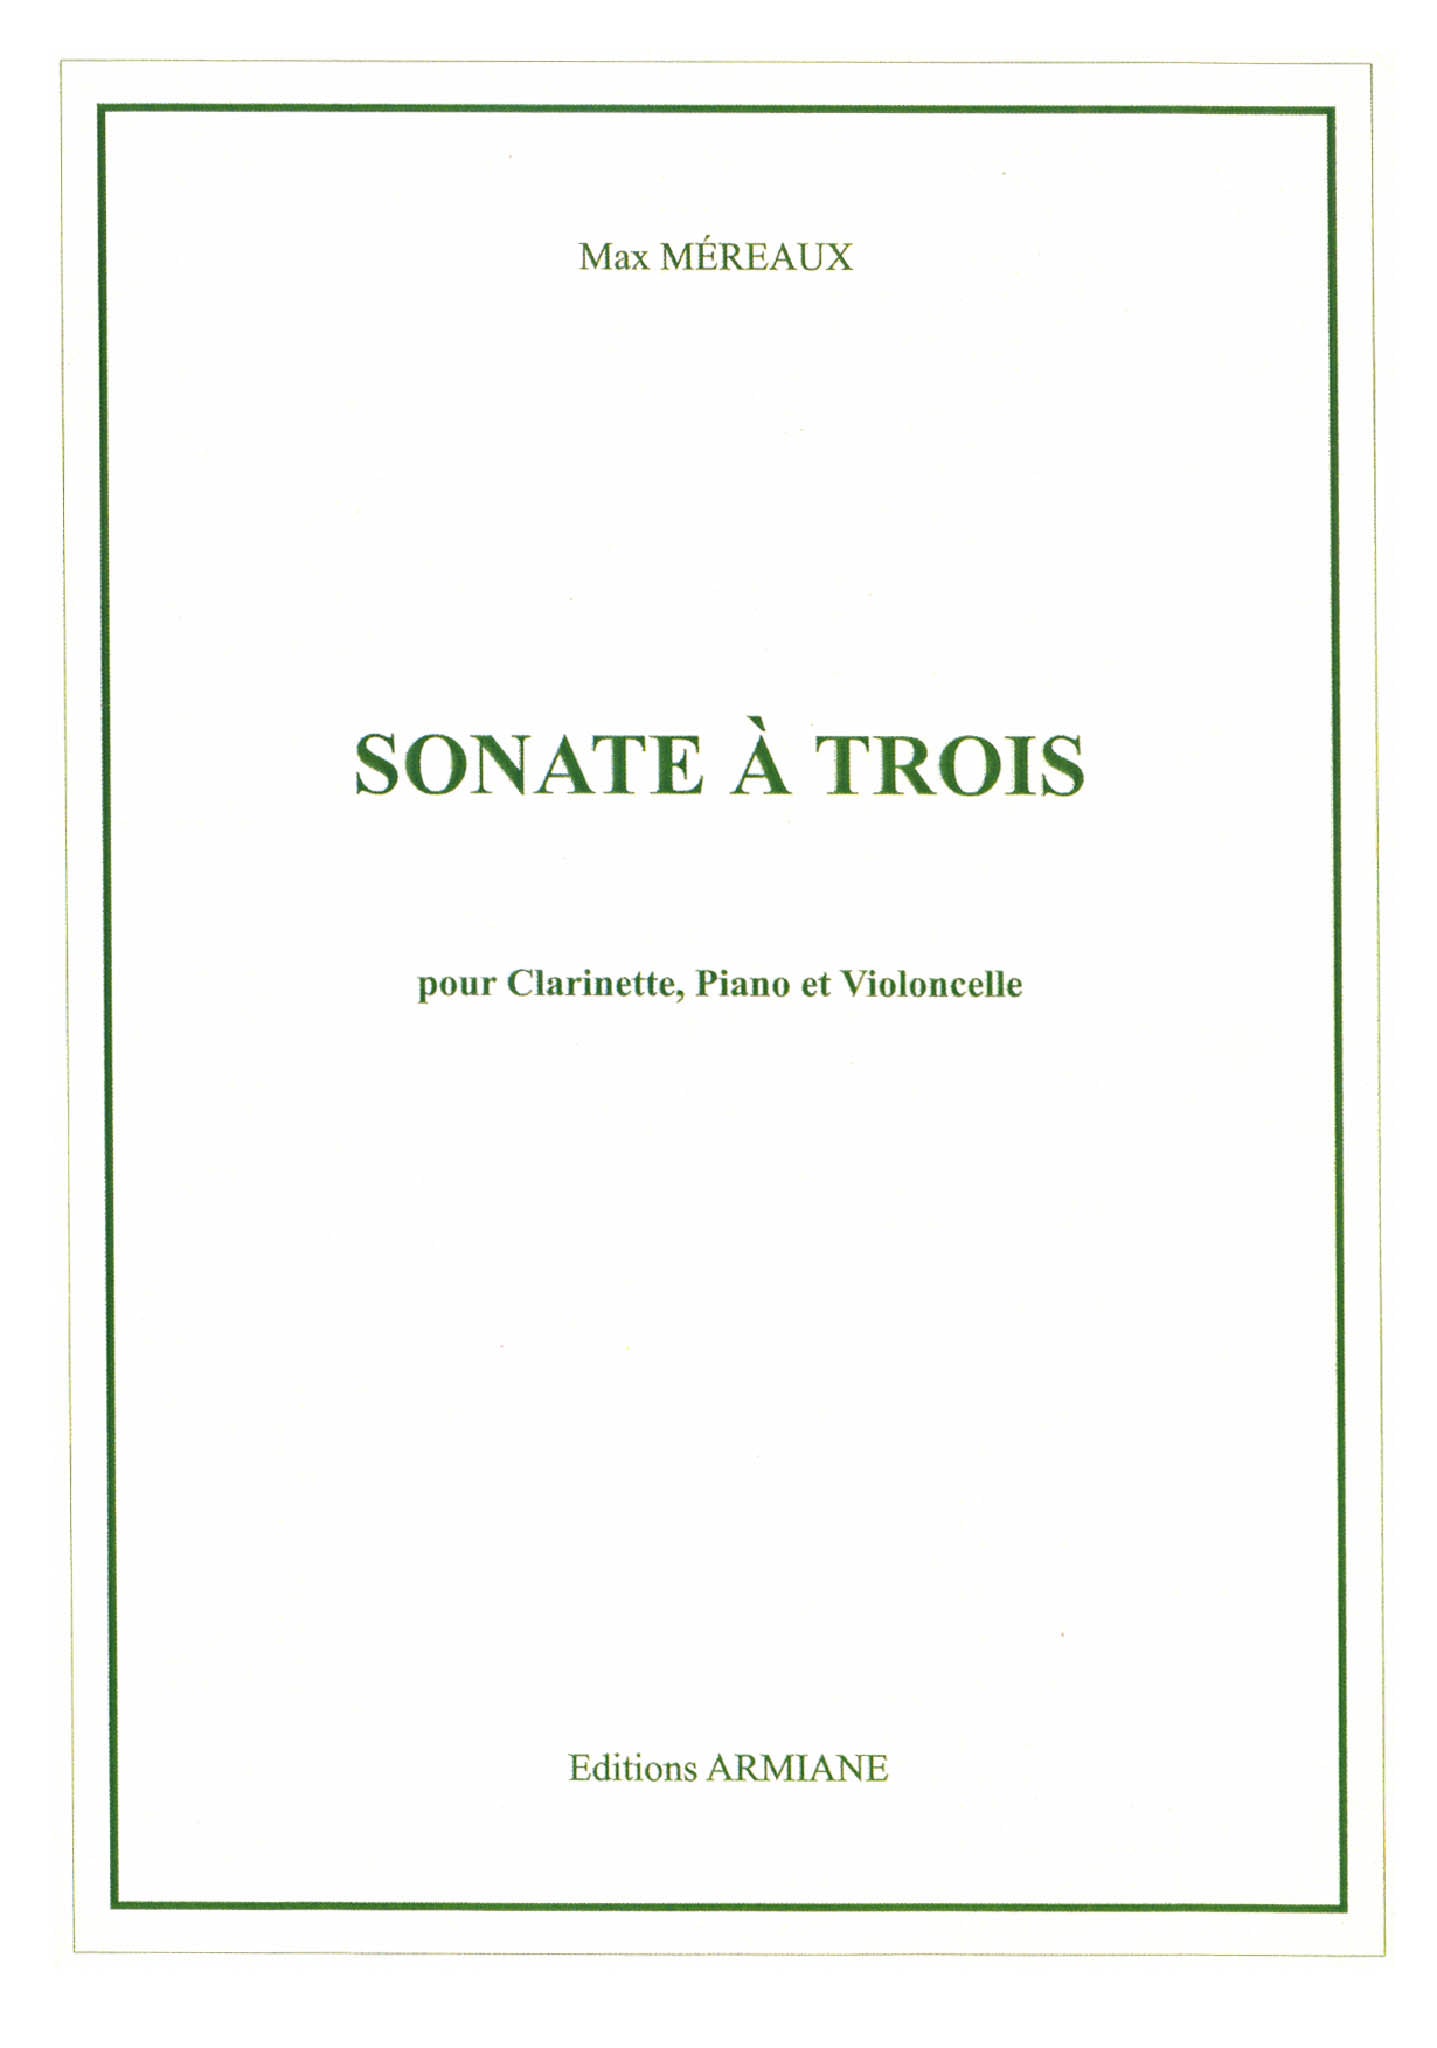 Méreaux Sonate à trois clarinet cello piano cover